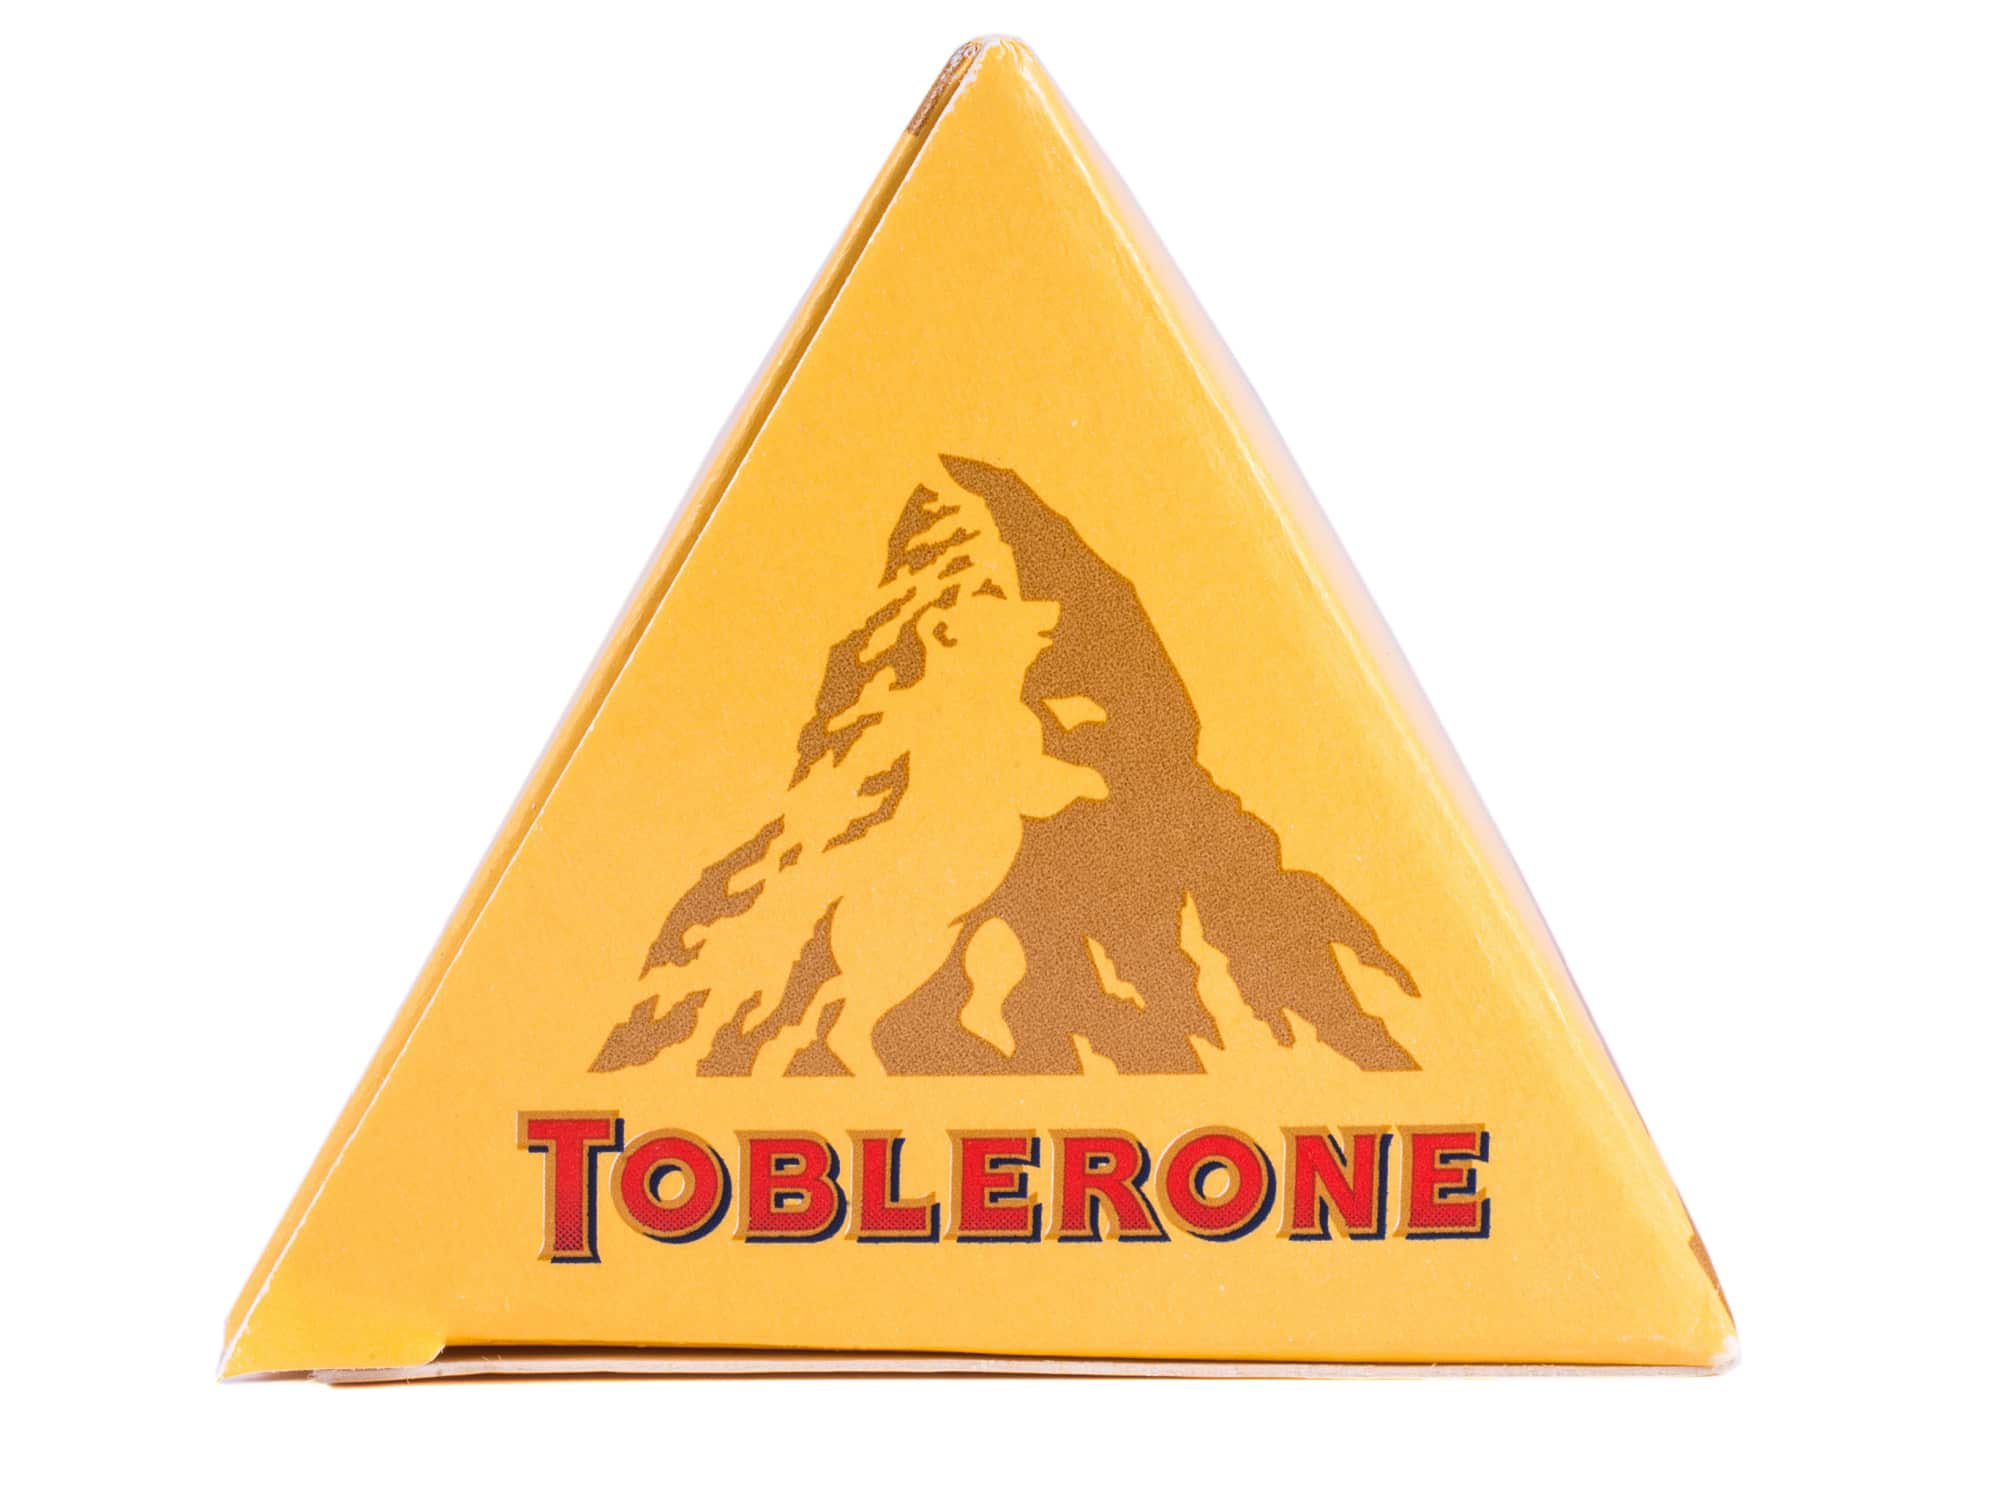  နှုတ်ဆက်ပါတယ် Toblerone တောင်- နာမည်ကြီး ချောကလက်လိုဂို အပြောင်းအလဲ – ဘာကြောင့်လဲဆိုတာ ရှာကြည့်ပါ။